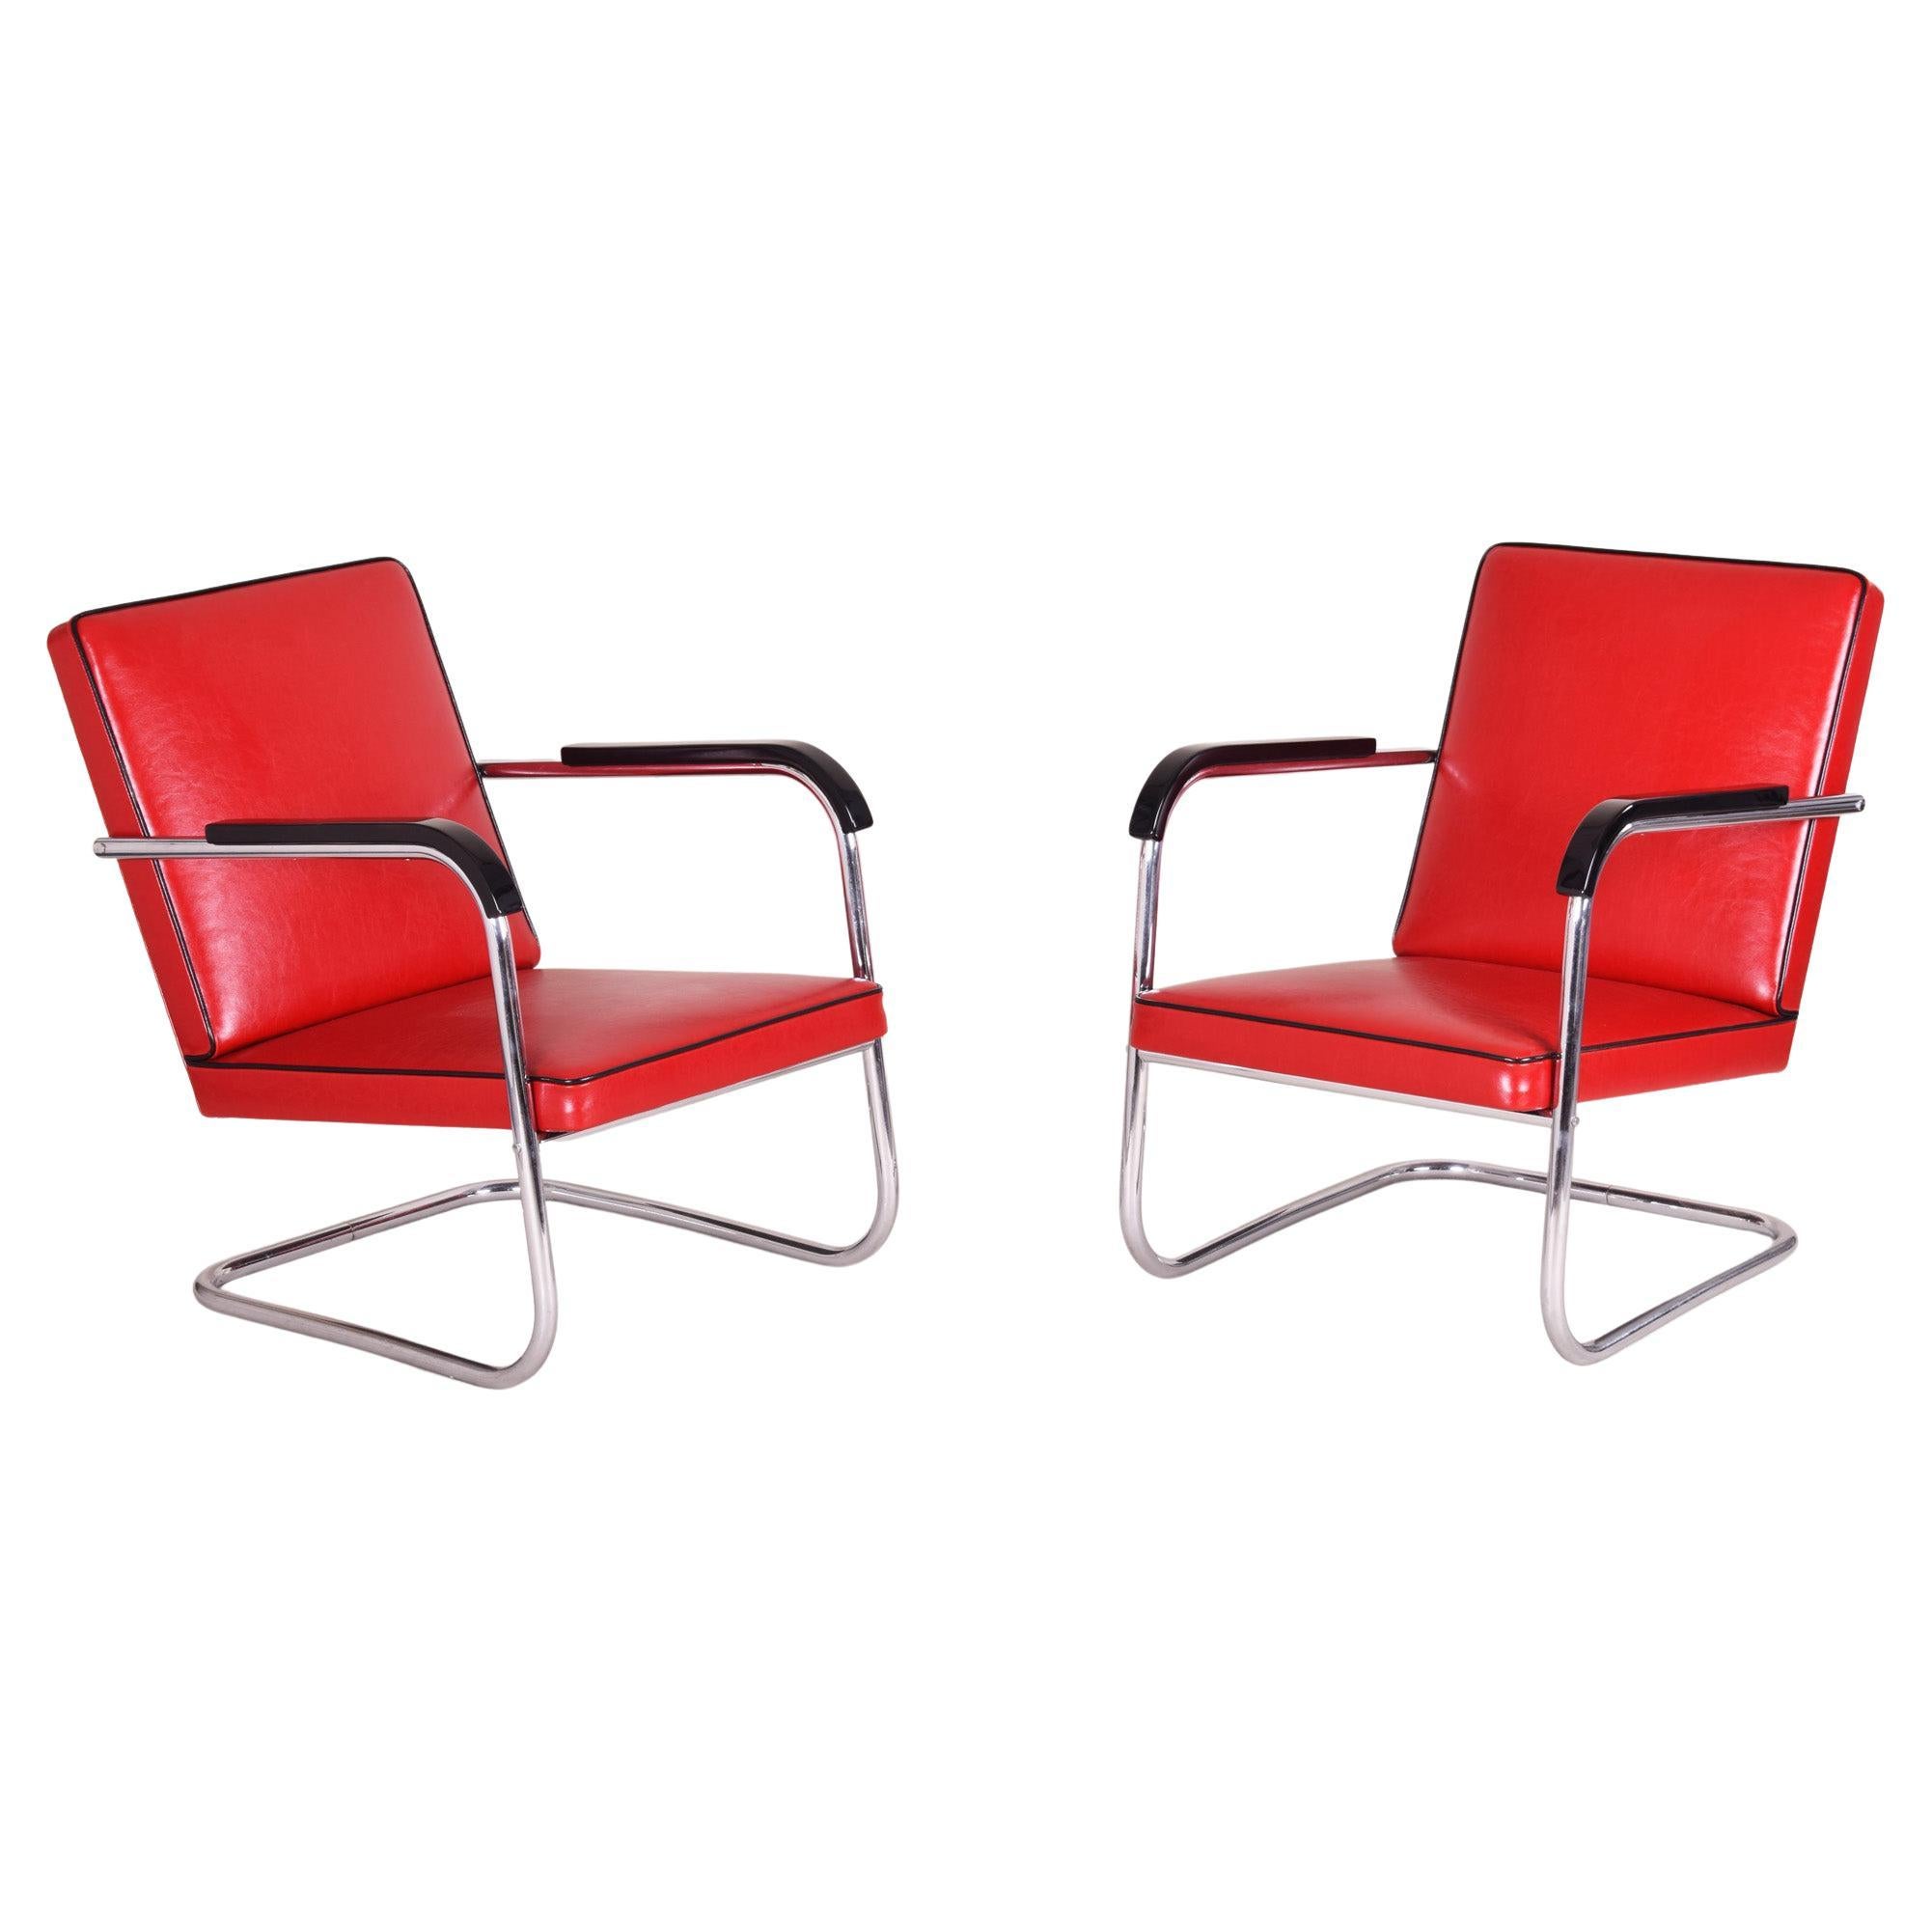 Paire de fauteuils Bauhaus rouges fabriqués en Allemagne dans les années 30, conçus par Anton Lorenz en vente